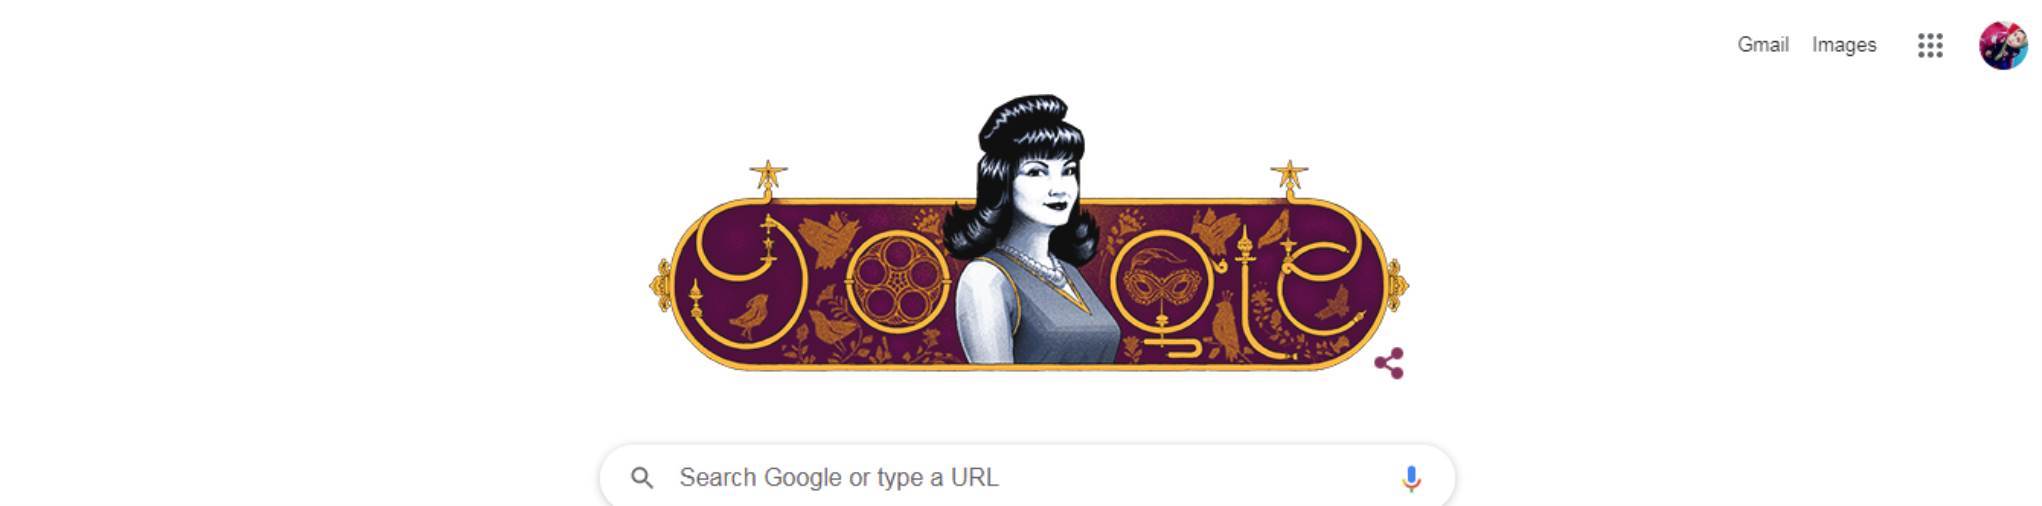 جوجل يحتفل مع العالم بذكرى ميلاد نجمة الشاشة شادية